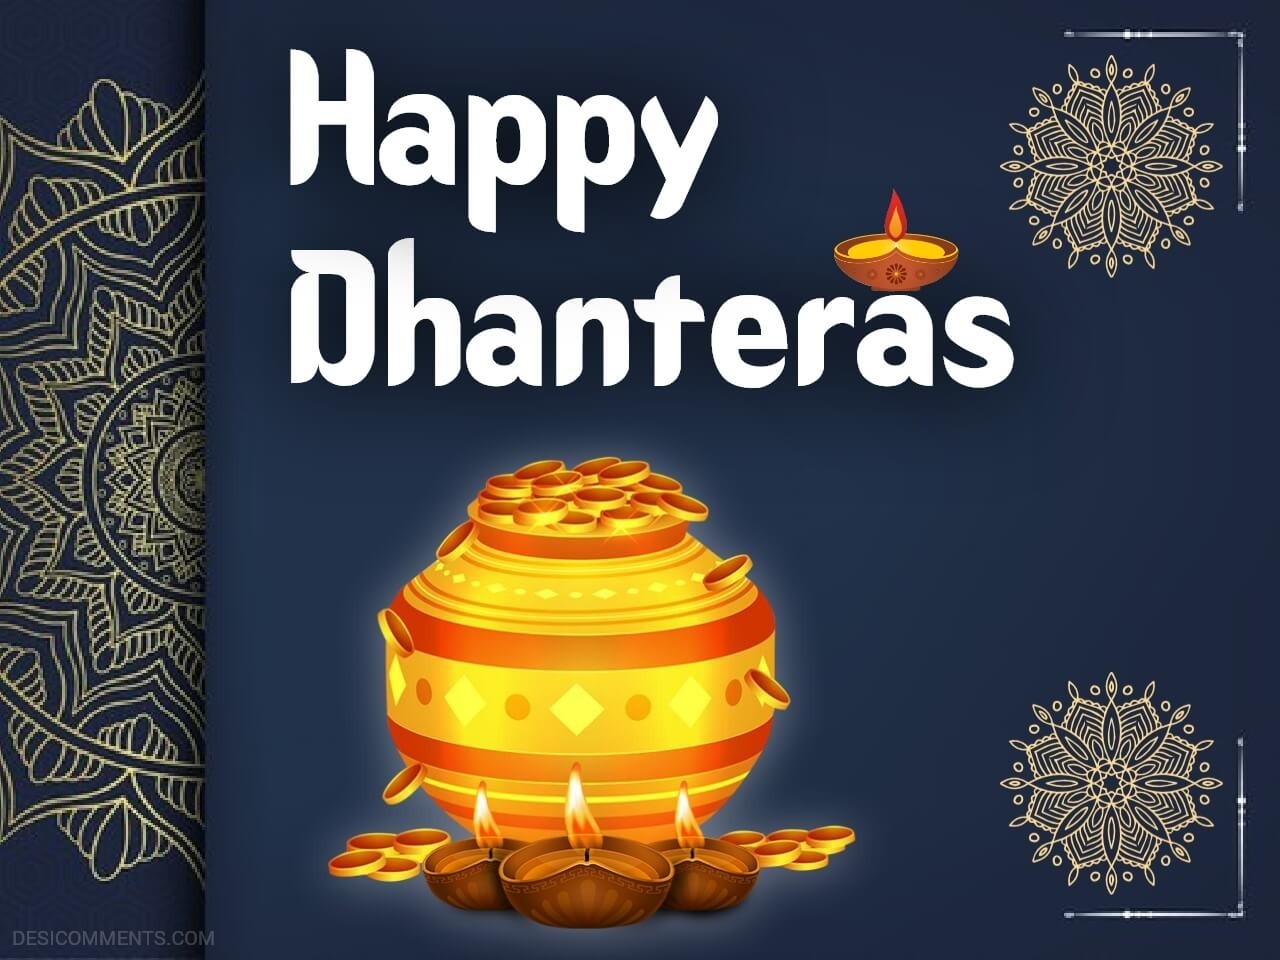 Happy Dhanteras Image - DesiComments.com